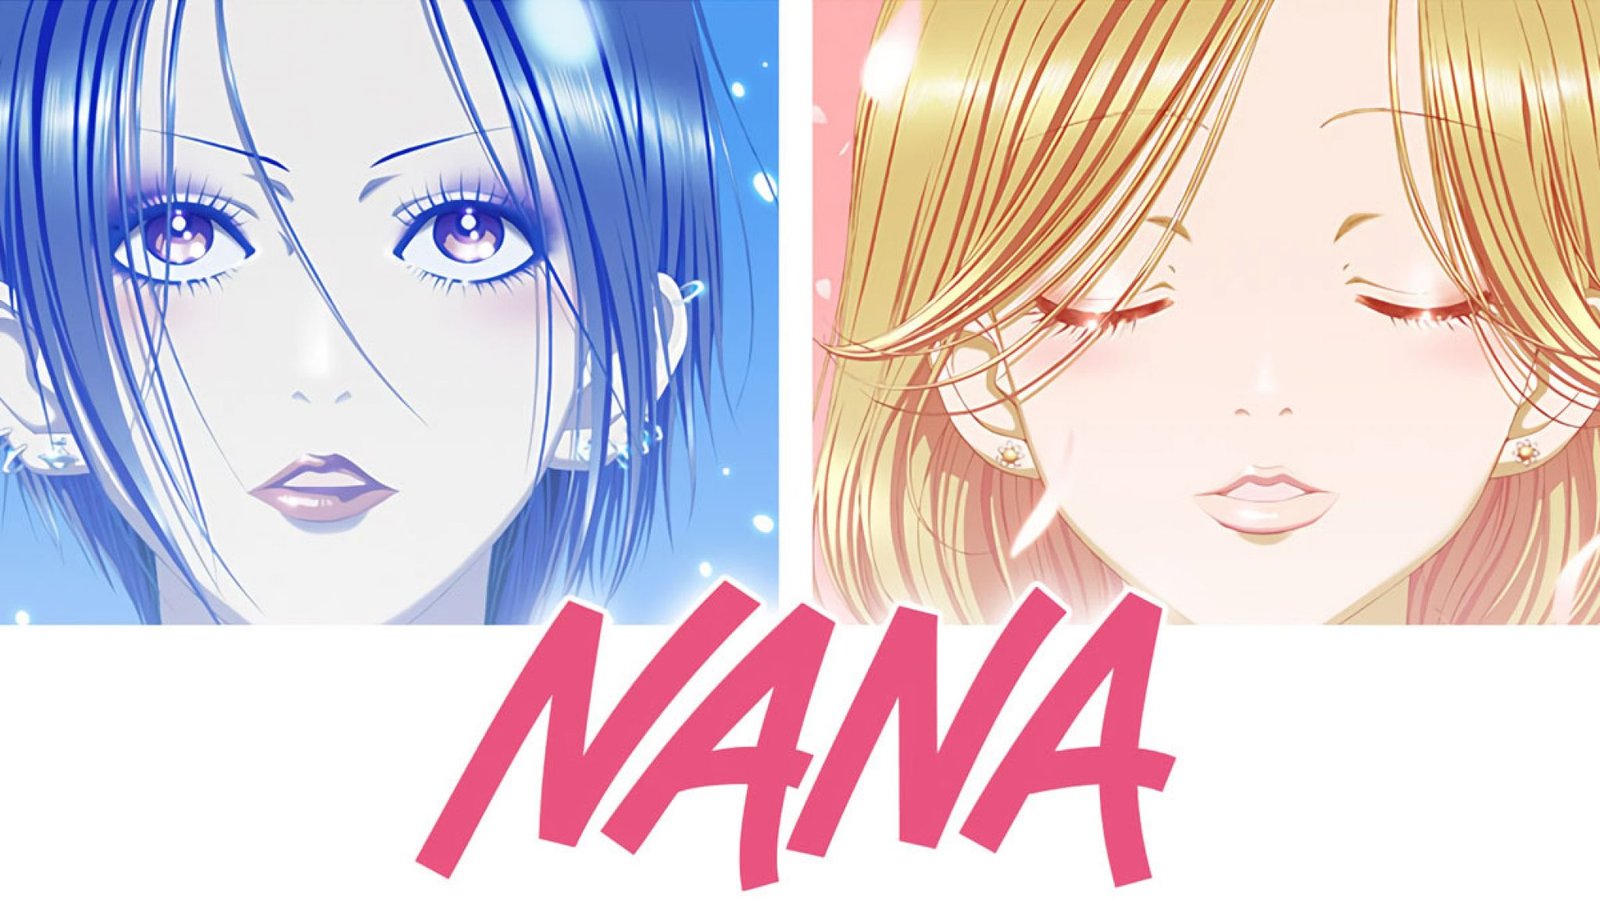 Nana Nana a5